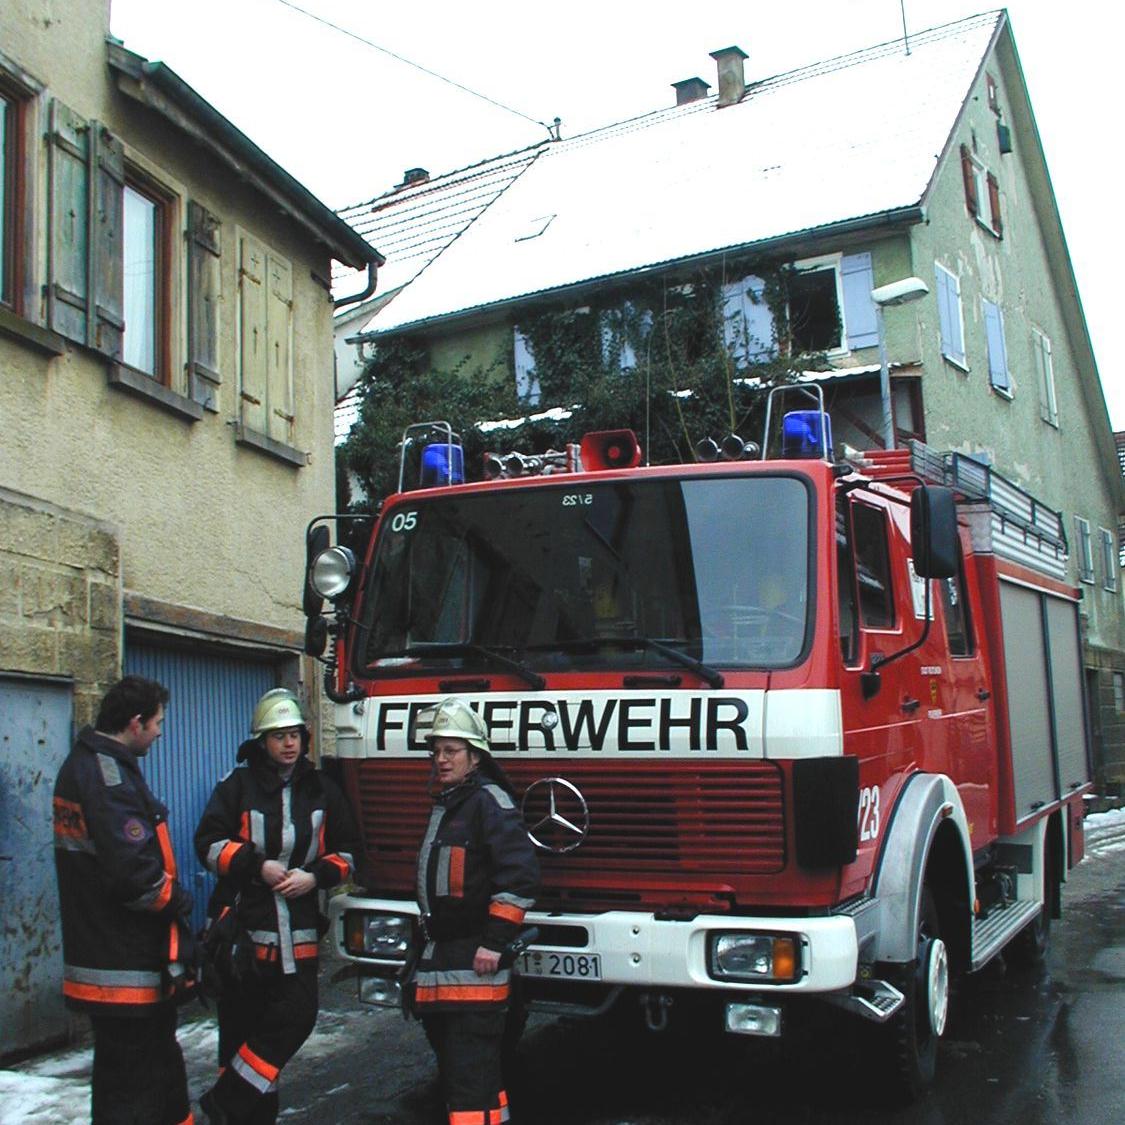 ????: Bilder der freiwilligen Feuerwehr Abteilung Mittelstadt - Kleinbrand Ölofen (Quelle: Daniel Kern)